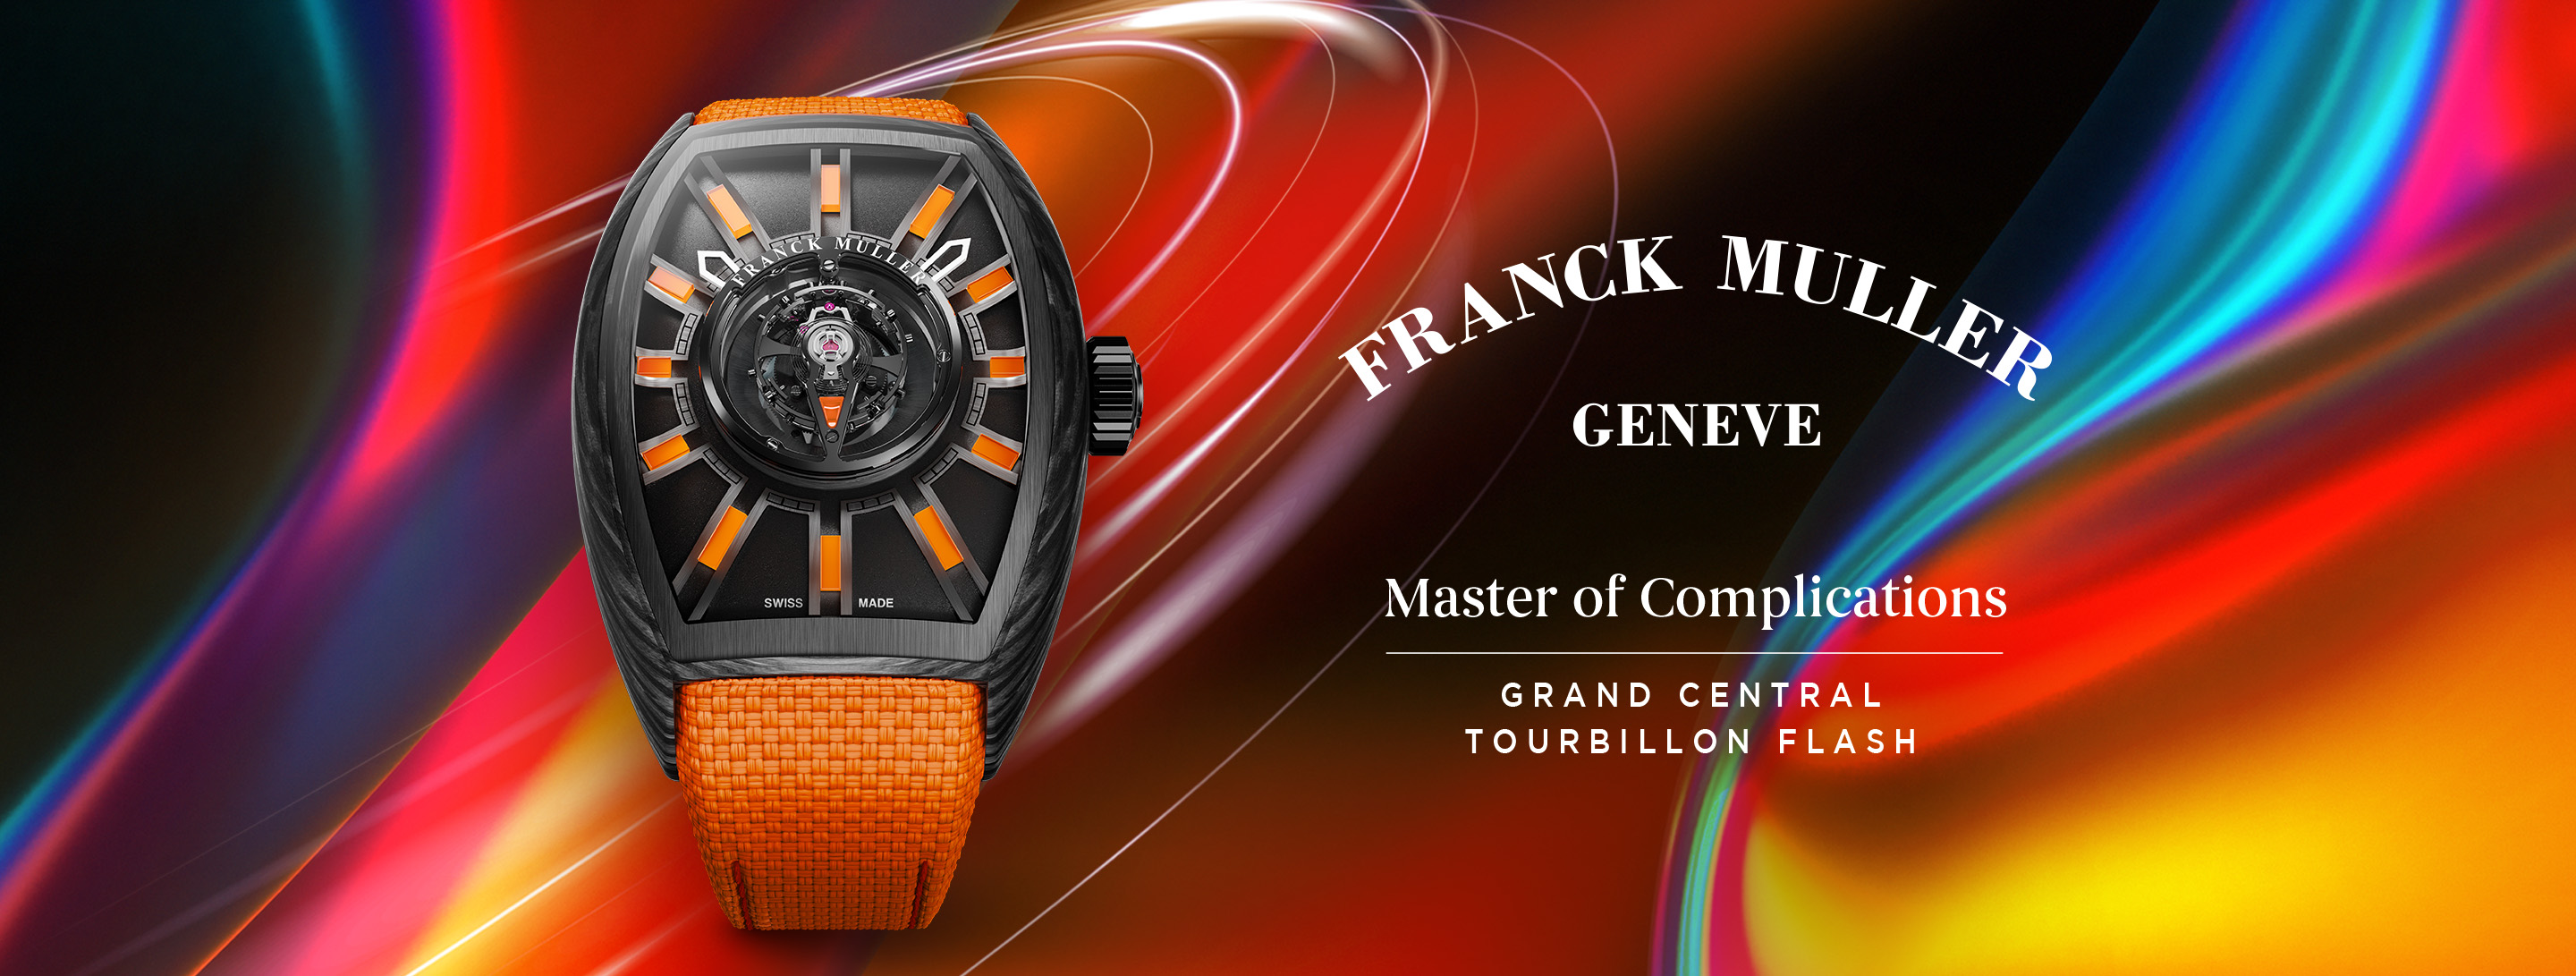 Franck Muller GCT Flash brand page desktop banner